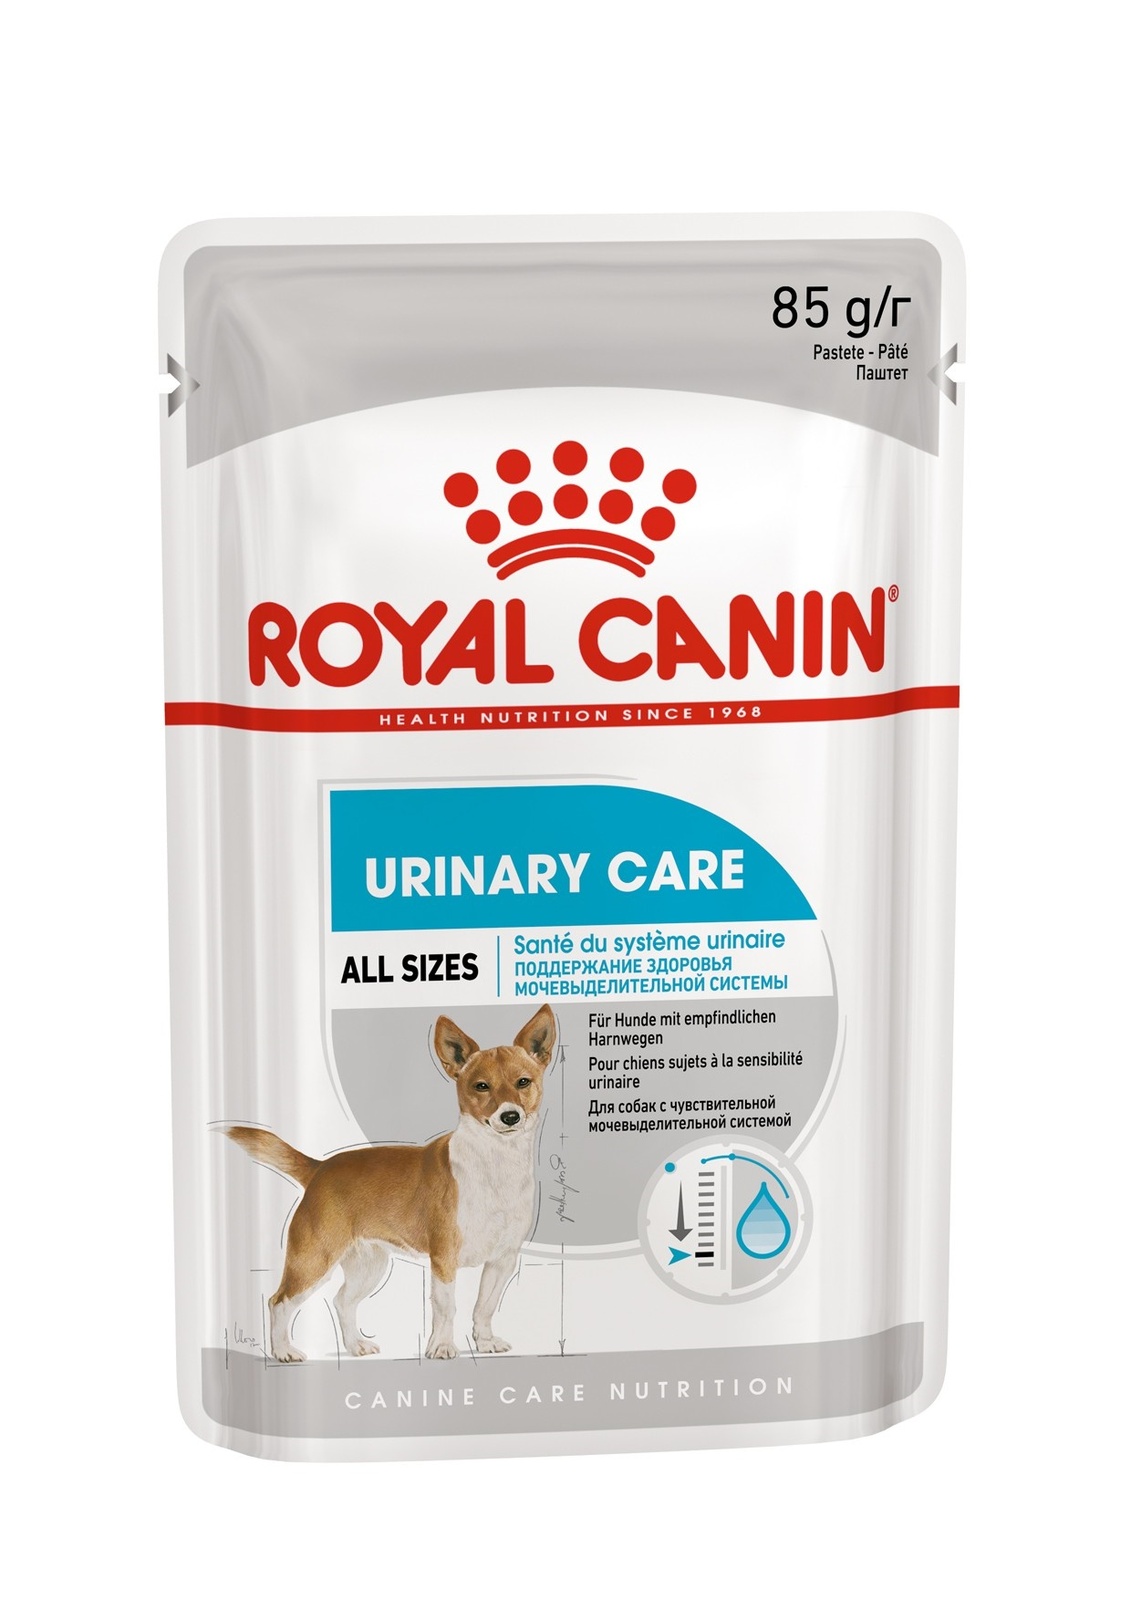 Royal Canin паштет для собак с чувствительной мочевыделительной системой (85 г)